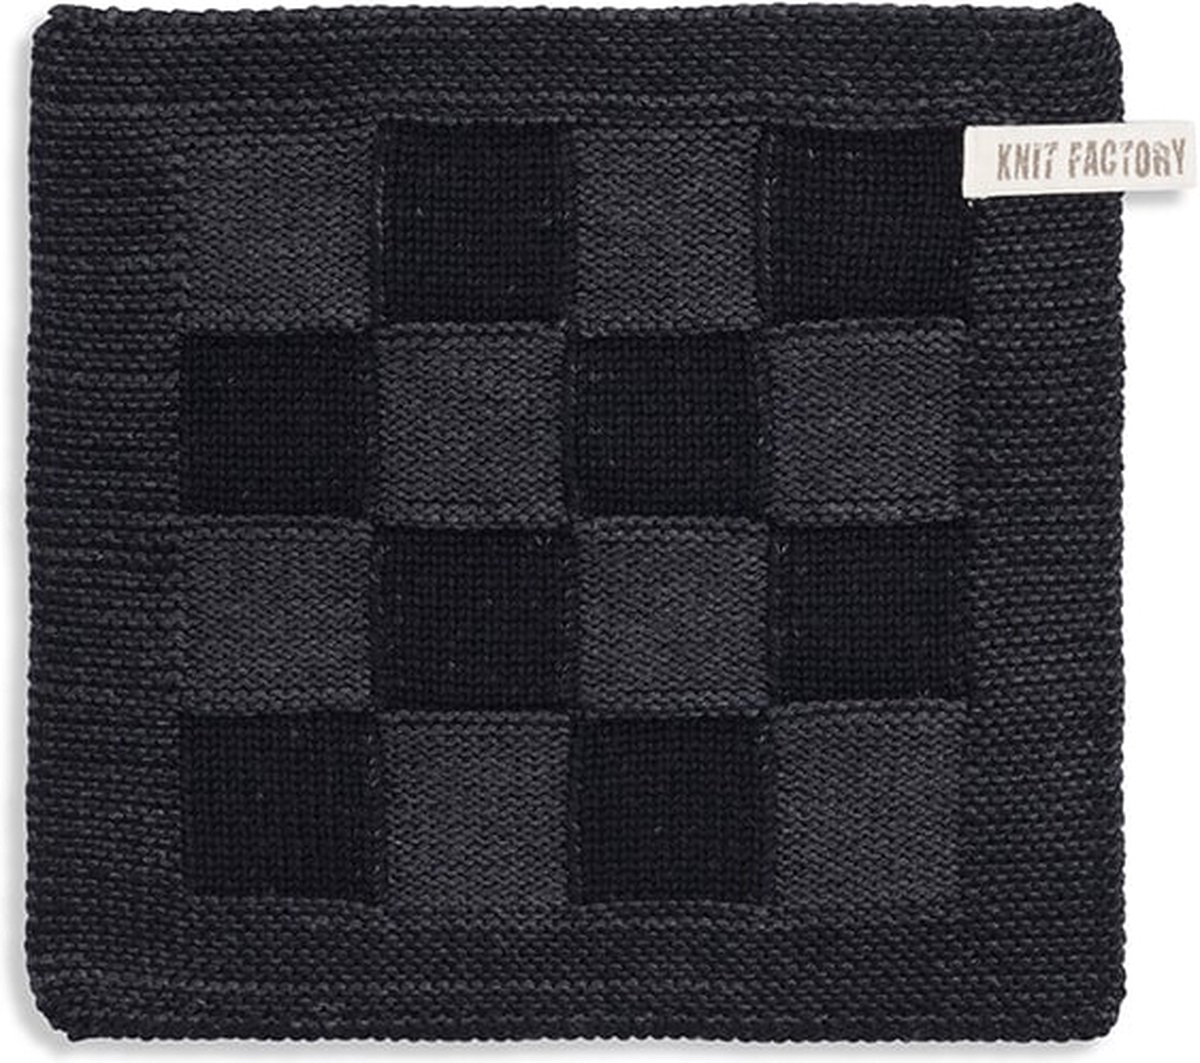 Knit Factory Gebreide Pannenlap Block - Pannenlappen gemaakt van 50% katoen & 50% acryl - Blokken motief - Traditionele look - 1 stuk - Zwart/Antraciet - 23x23 cm - Knit Factory